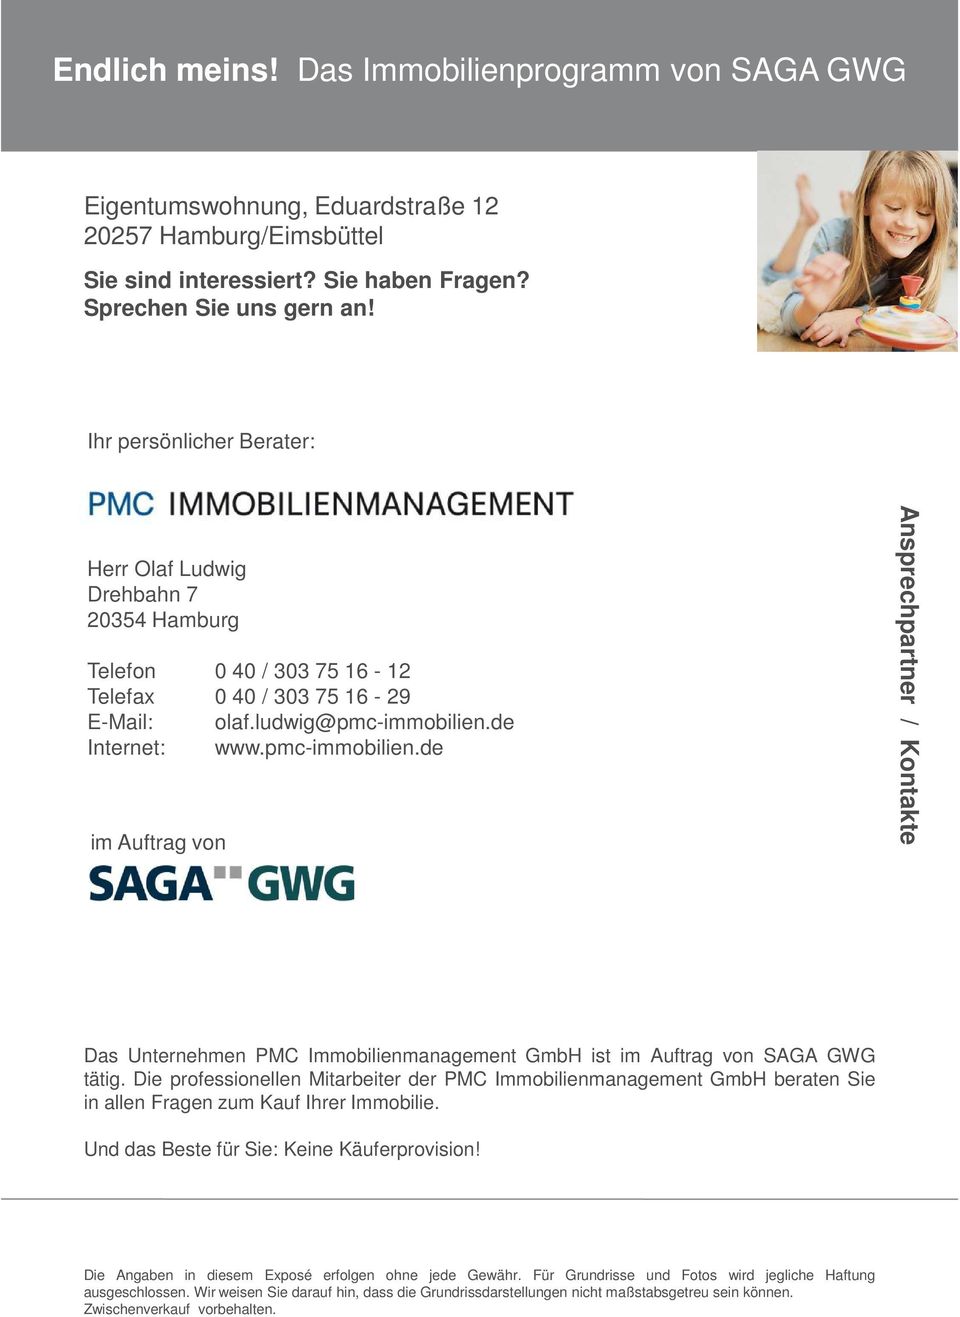 pmc-immobilien.de Ansprechpartner / Kontakte Das Unternehmen PMC Immobilienmanagement GmbH ist SAGA GWG tätig.